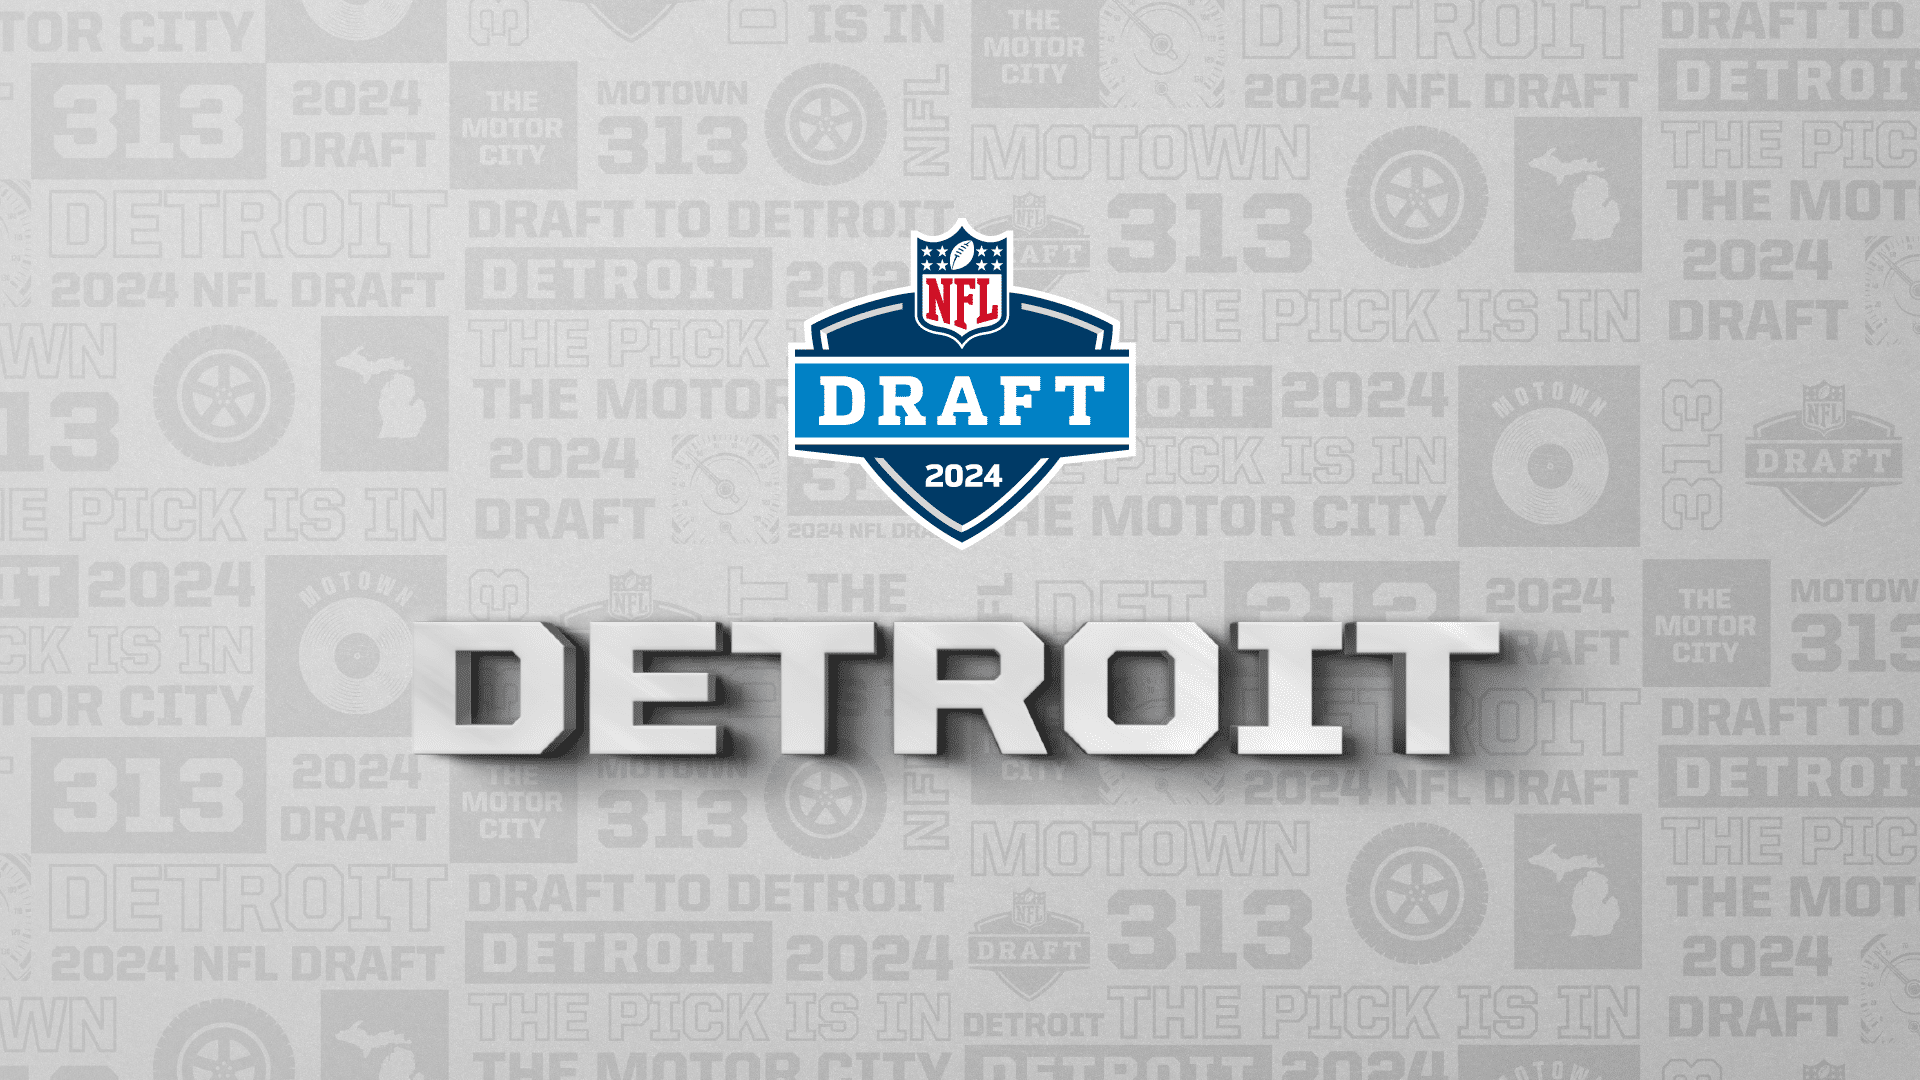 NFL Announces 34 Compensatory Picks for 2024 NFL Draft Detroit Sports